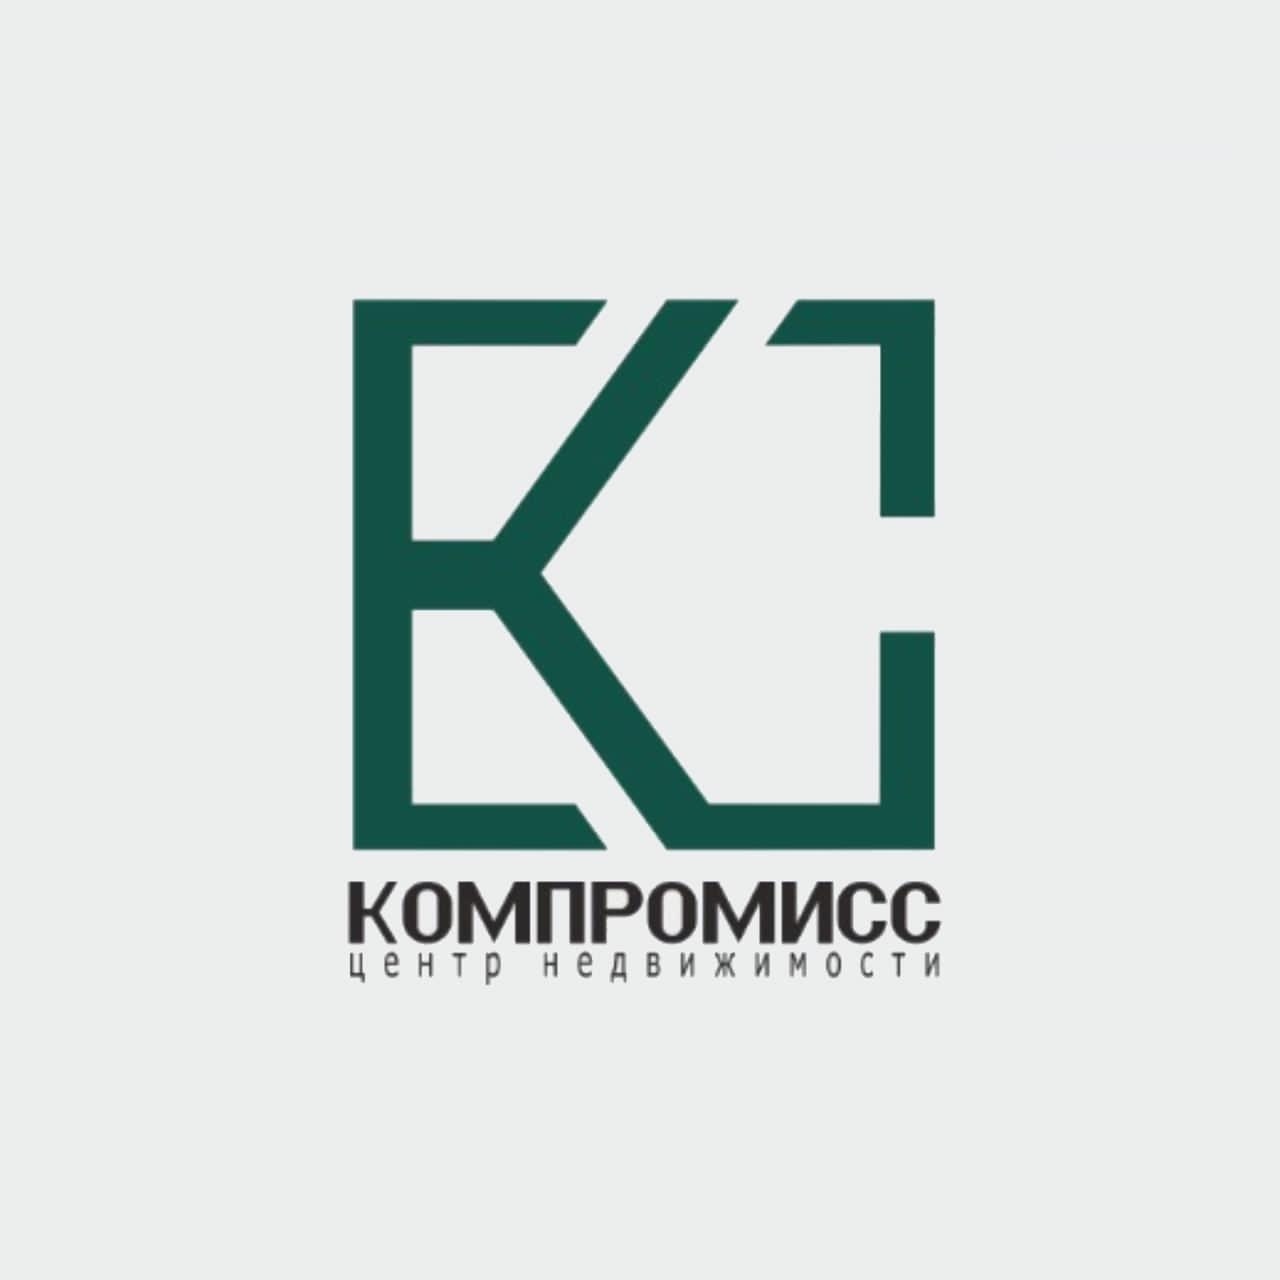 Фото / логотип АН Компромисс, Краснодар